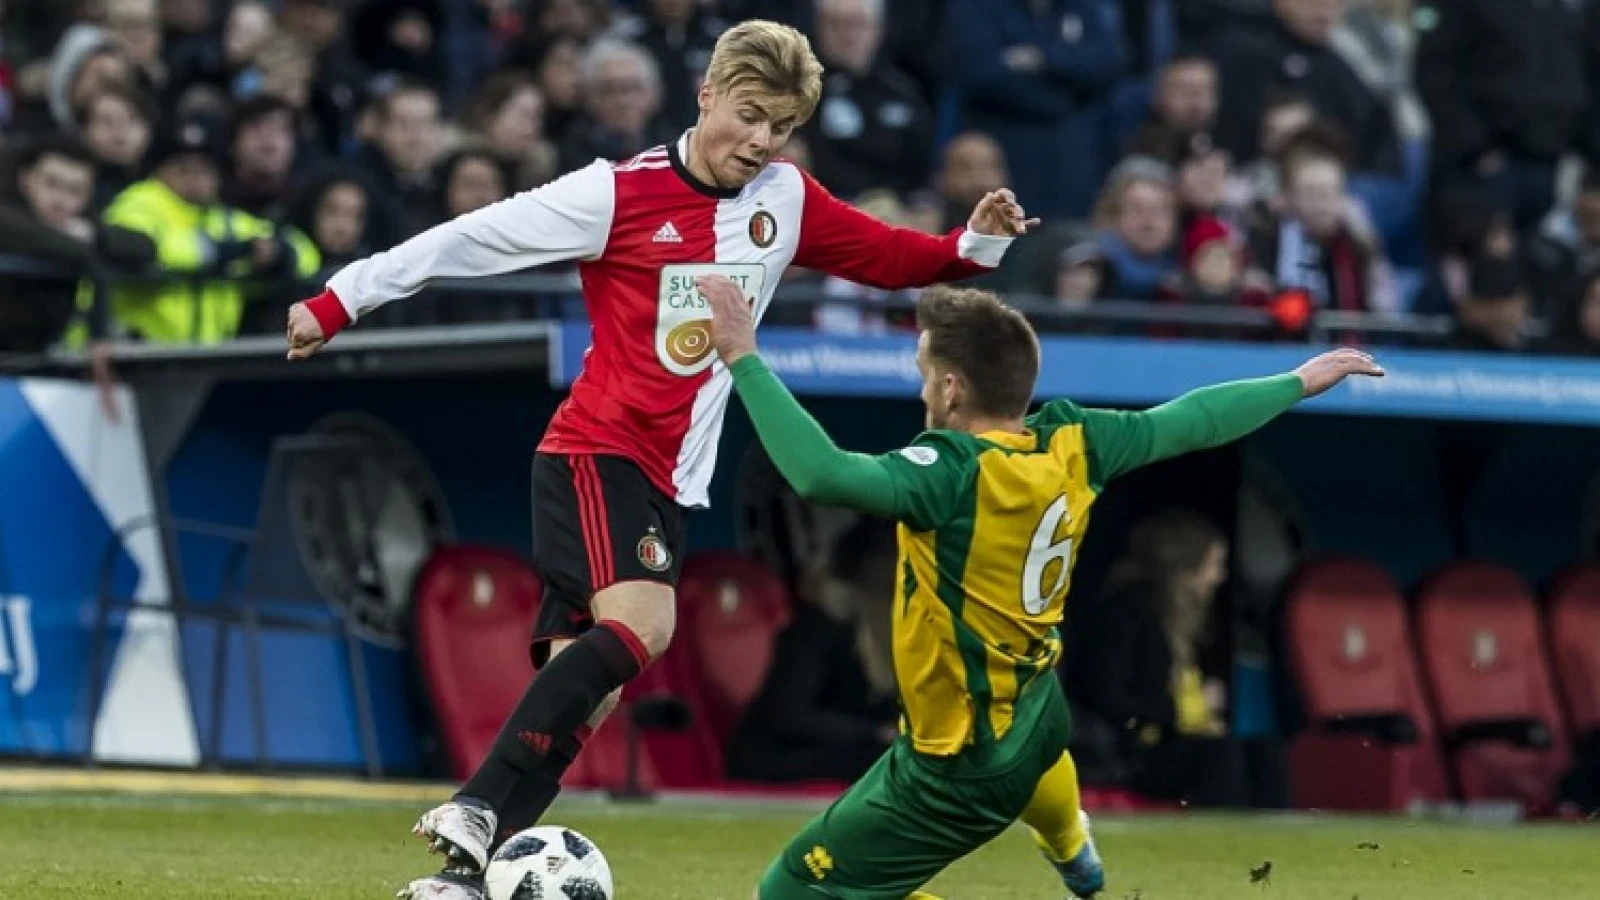 LIVE | Feyenoord - ADO Den Haag 4-0 | Einde wedstrijd